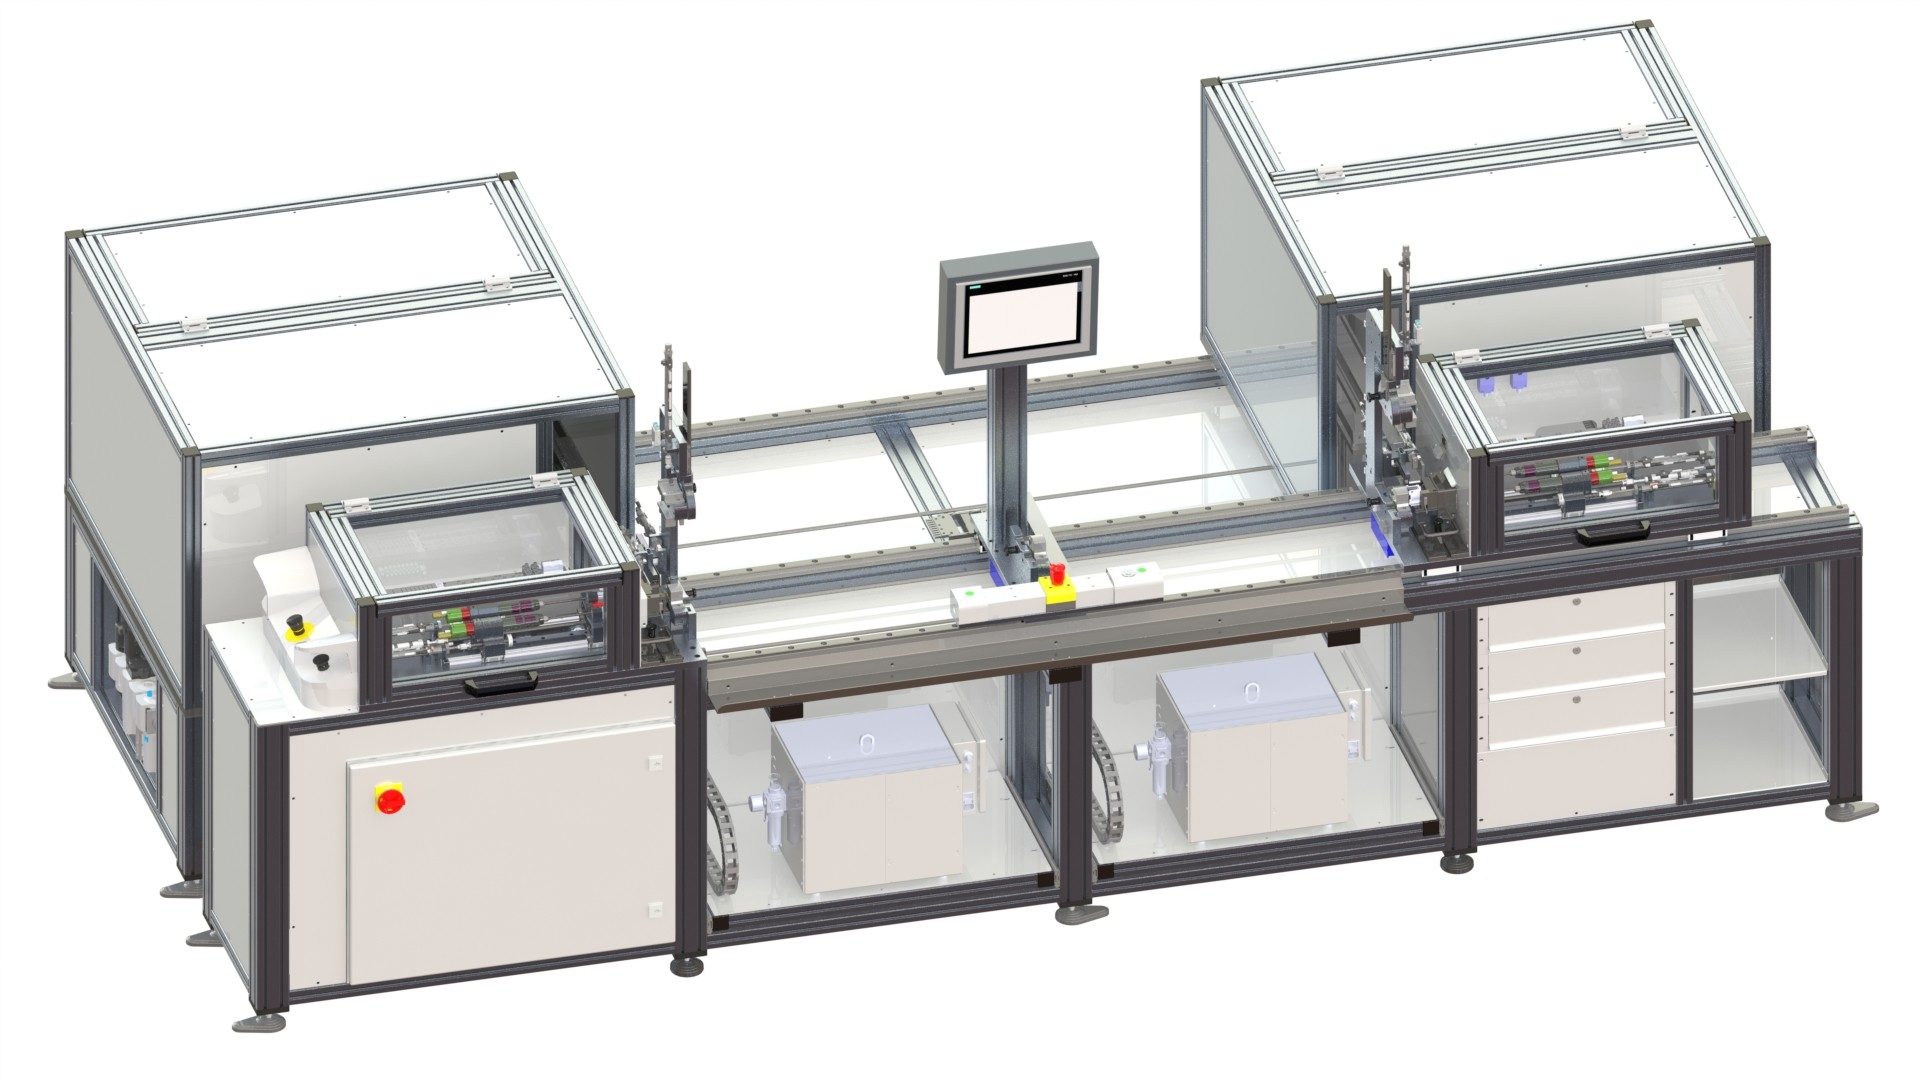 Vollautomatischer Schraubautomat mit Formatvorstellung, umrüstbar auf verschiedene Produktvarianten